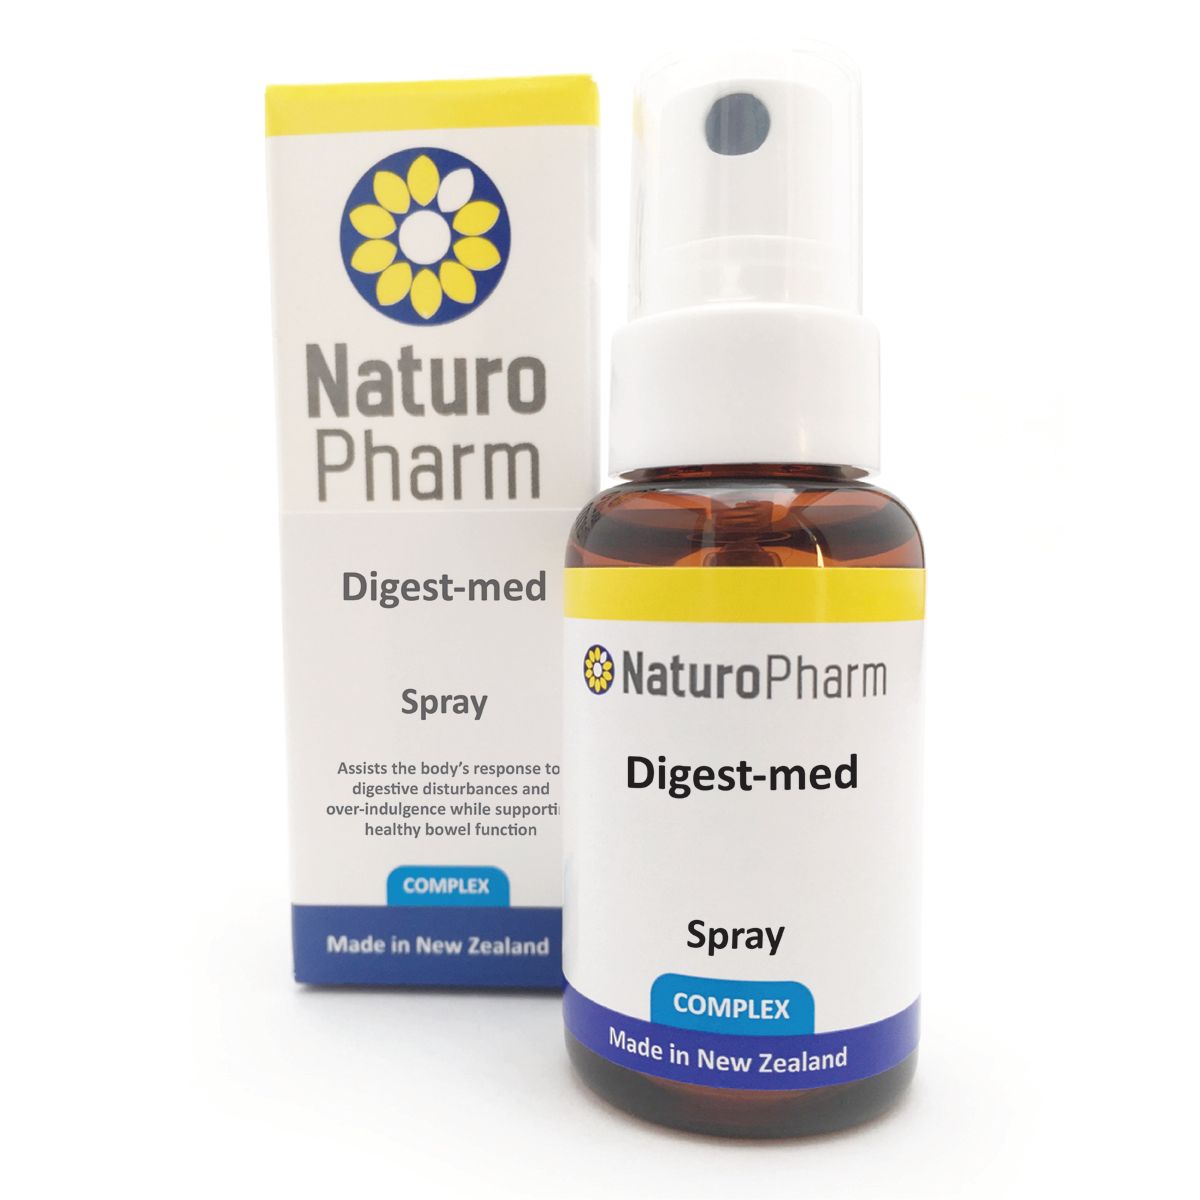 Naturo Pharm Digest-Med